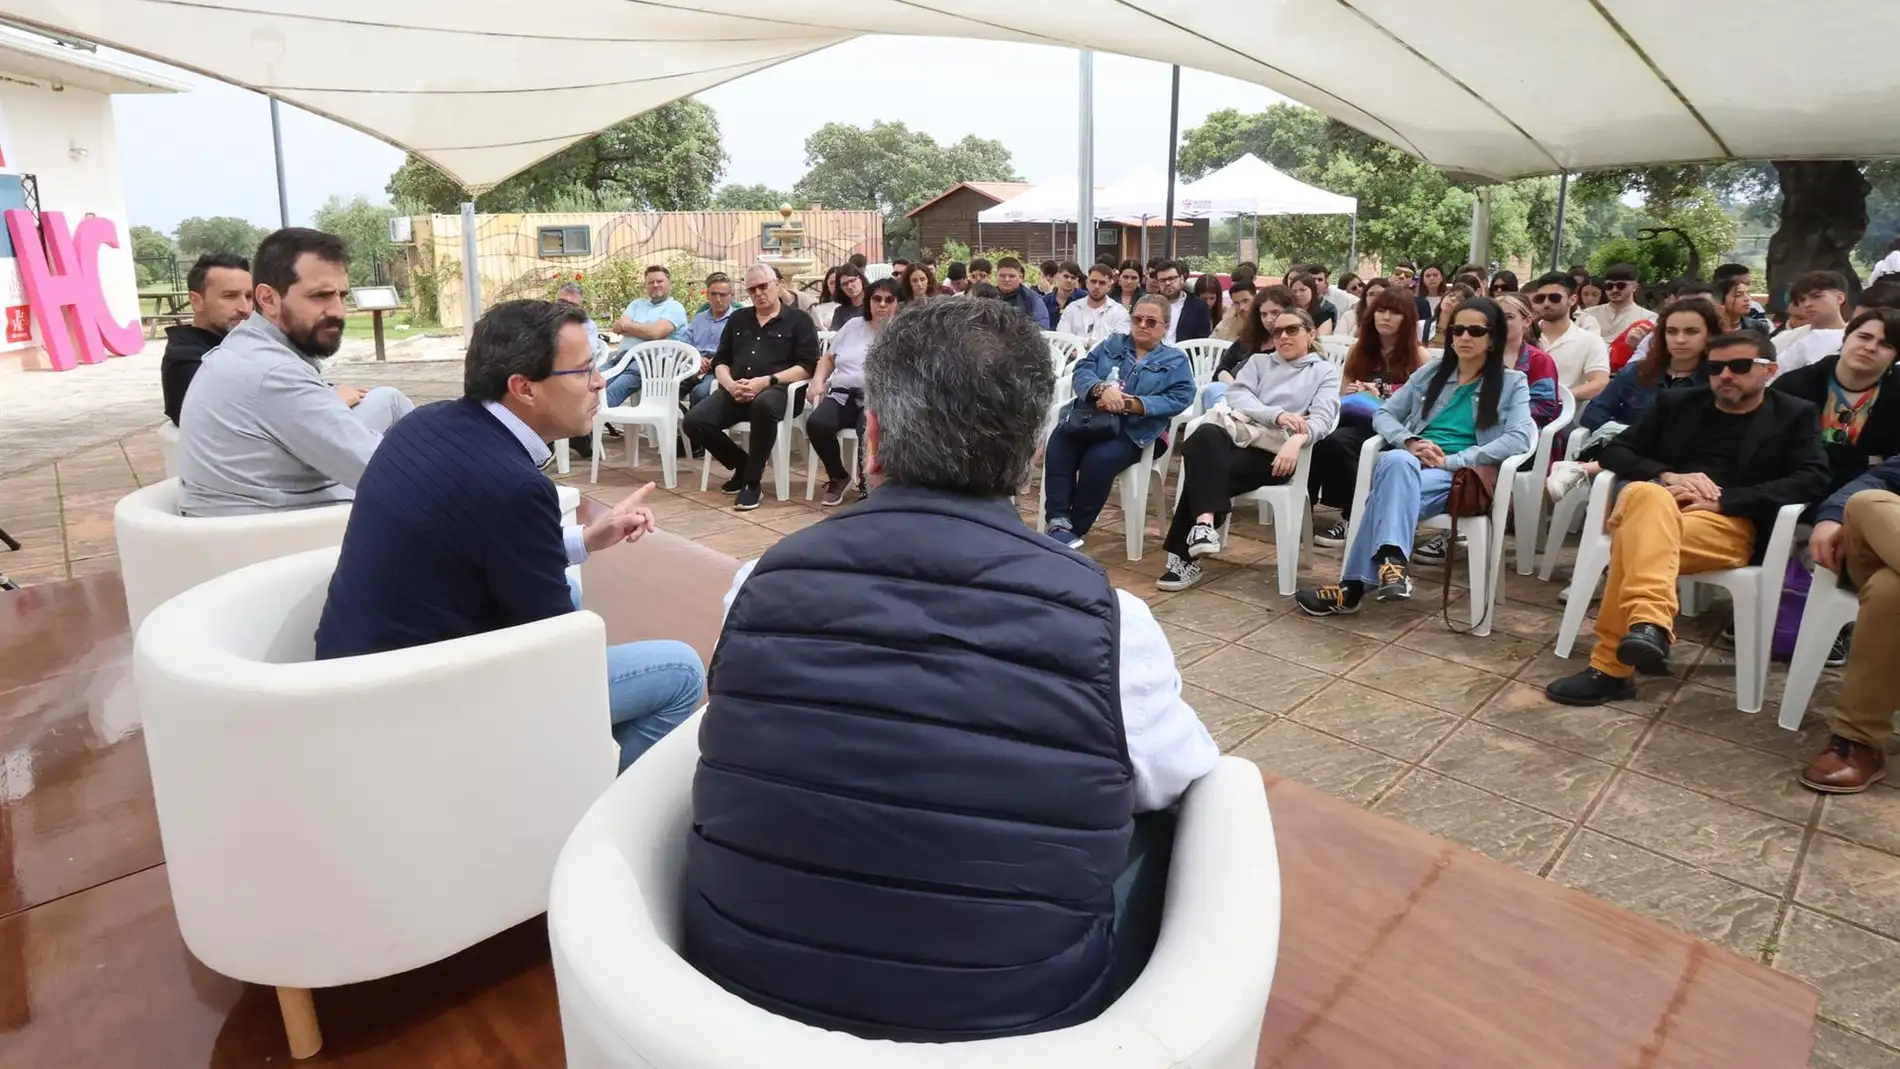 Gallardo pone en valor el potencial de Extremadura para un "nuevo mundo" basado en la sostenibilidad